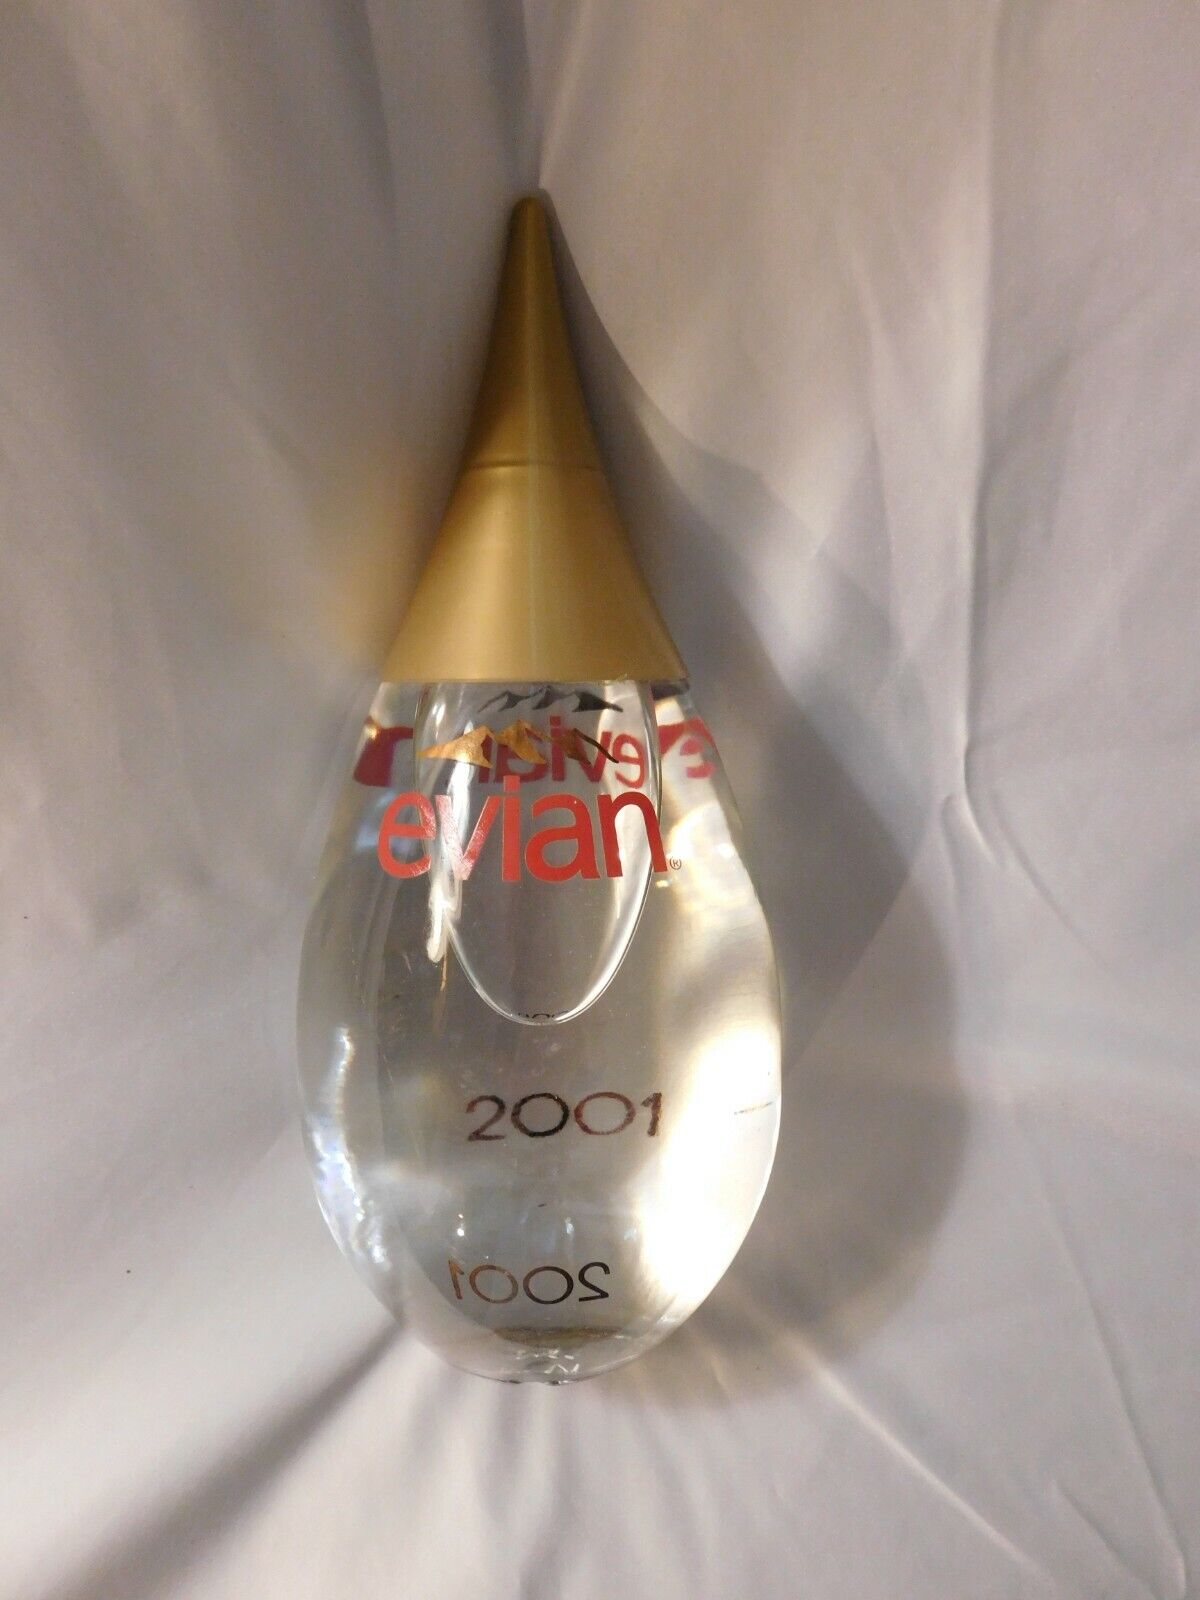 Evian Teardrop Glass Water Bottle 2001